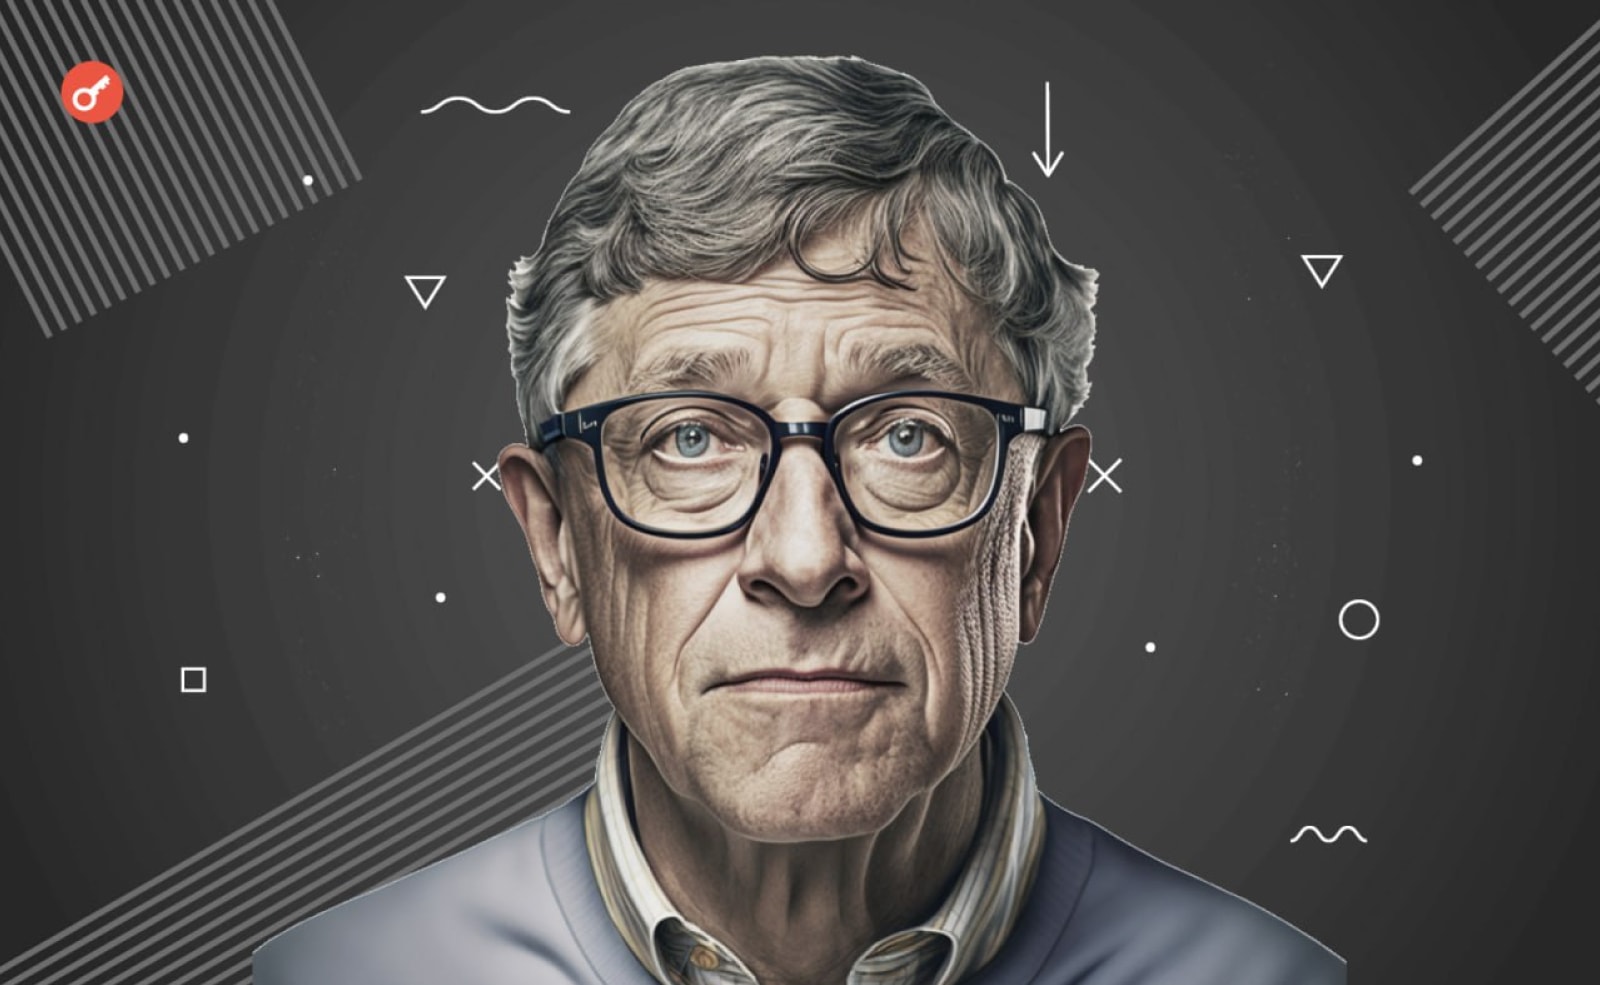 Білл Гейтс провів AMA-сесію на Reddit. Серед іншого, йому поставили запитання про те, яку технологію він вважає такою ж революційною, як інтернет на початку нульових.